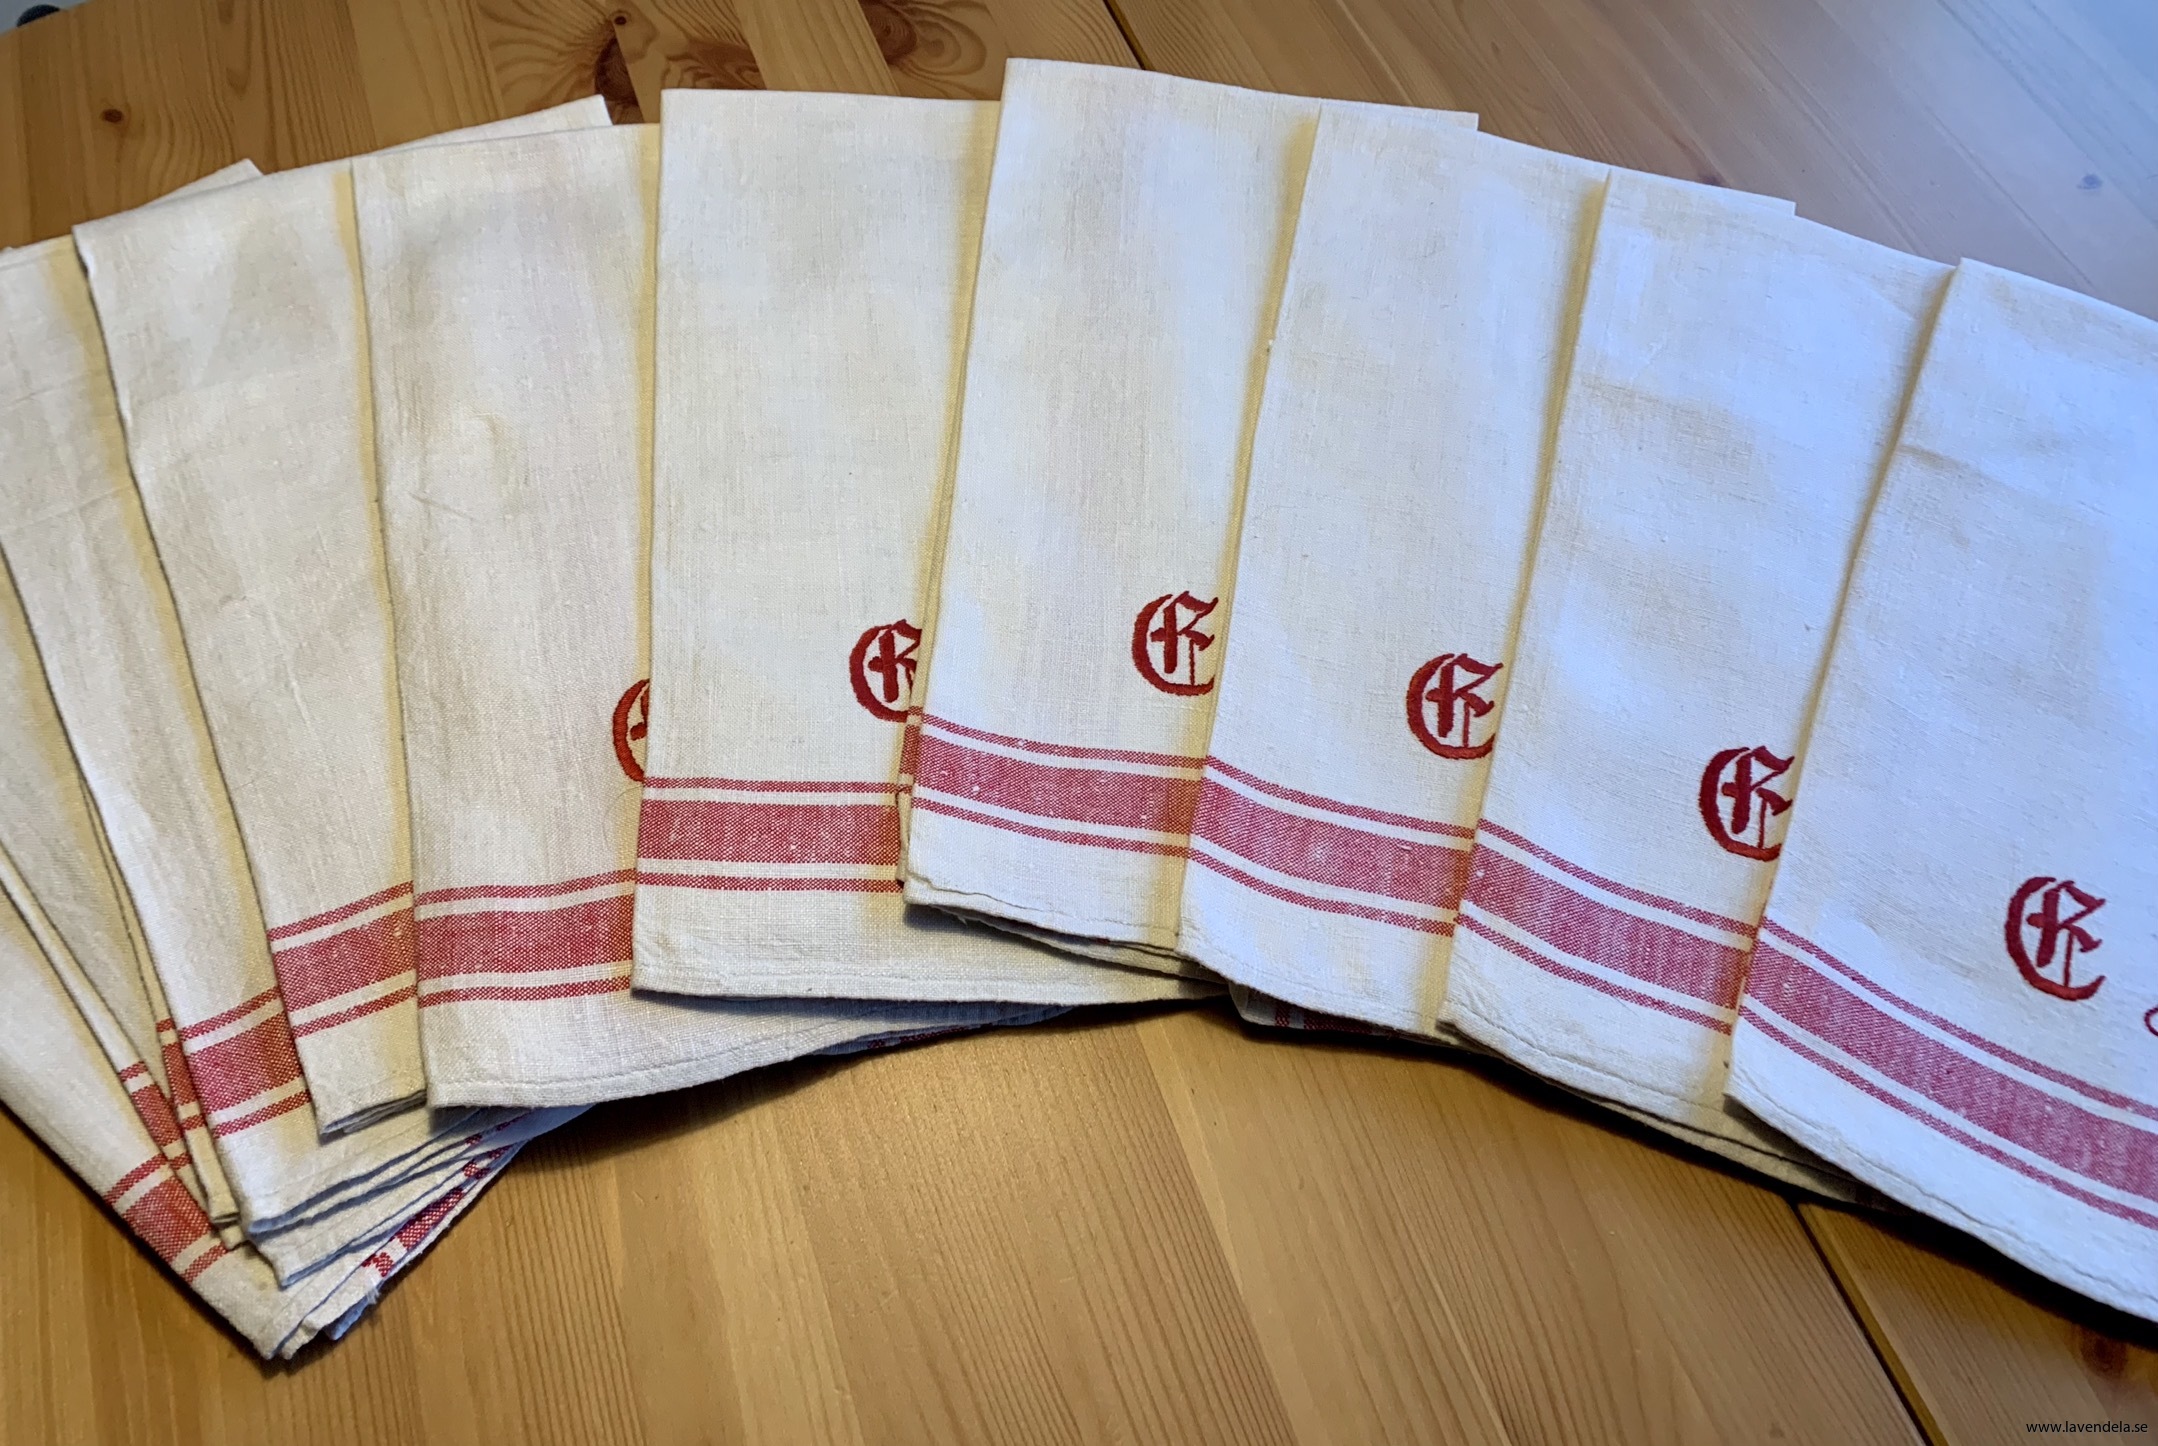 10 stycken vackra handdukar